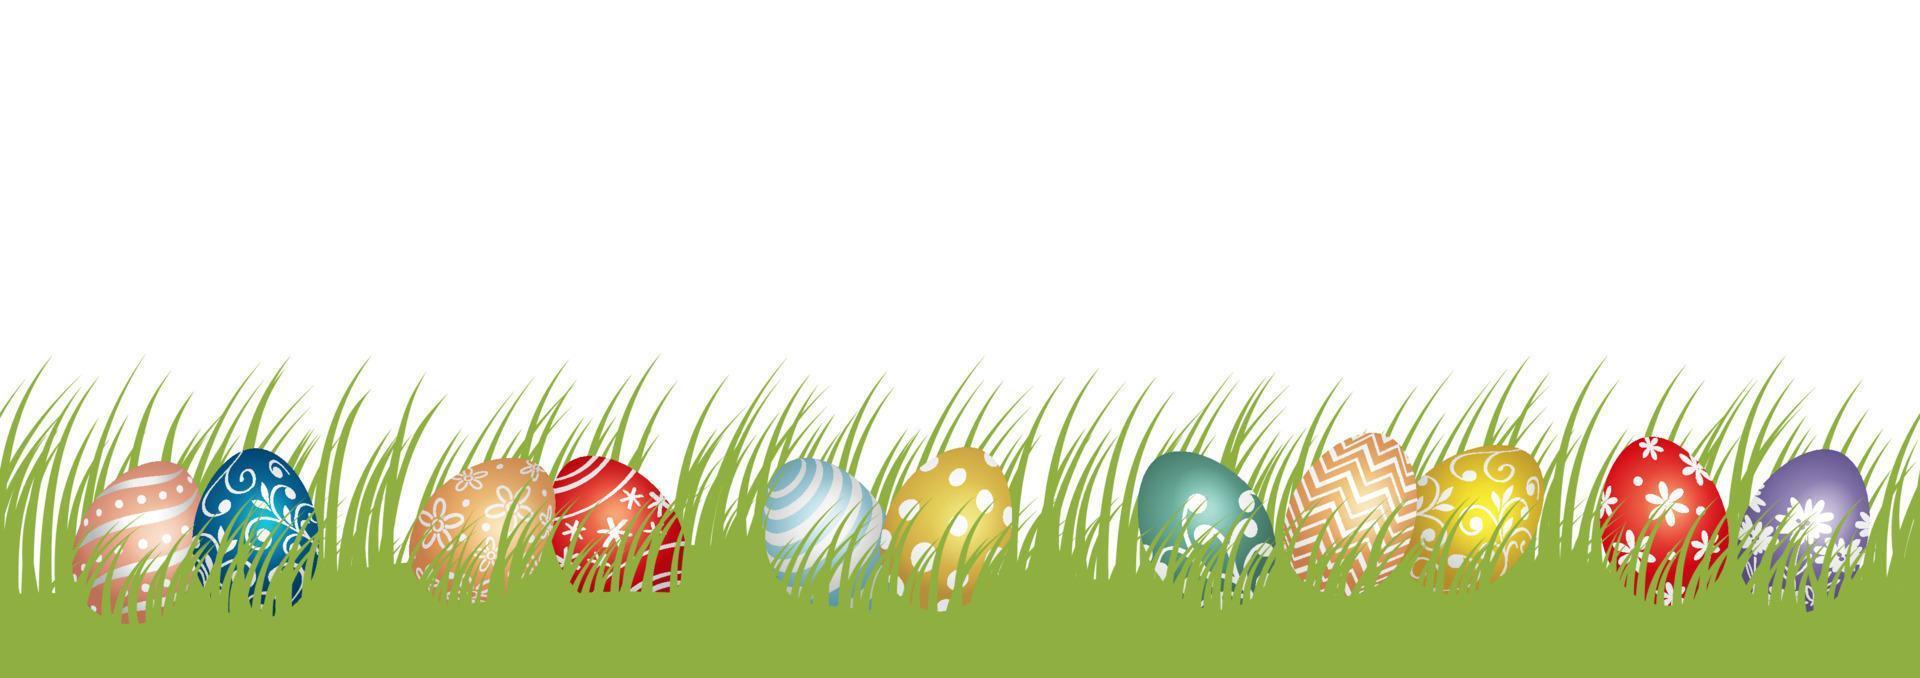 Ostern-Vektorhintergrundillustration mit grasbewachsenem Feld, bunten Eiern und Textraum lokalisiert auf einem weißen Hintergrund. vektor